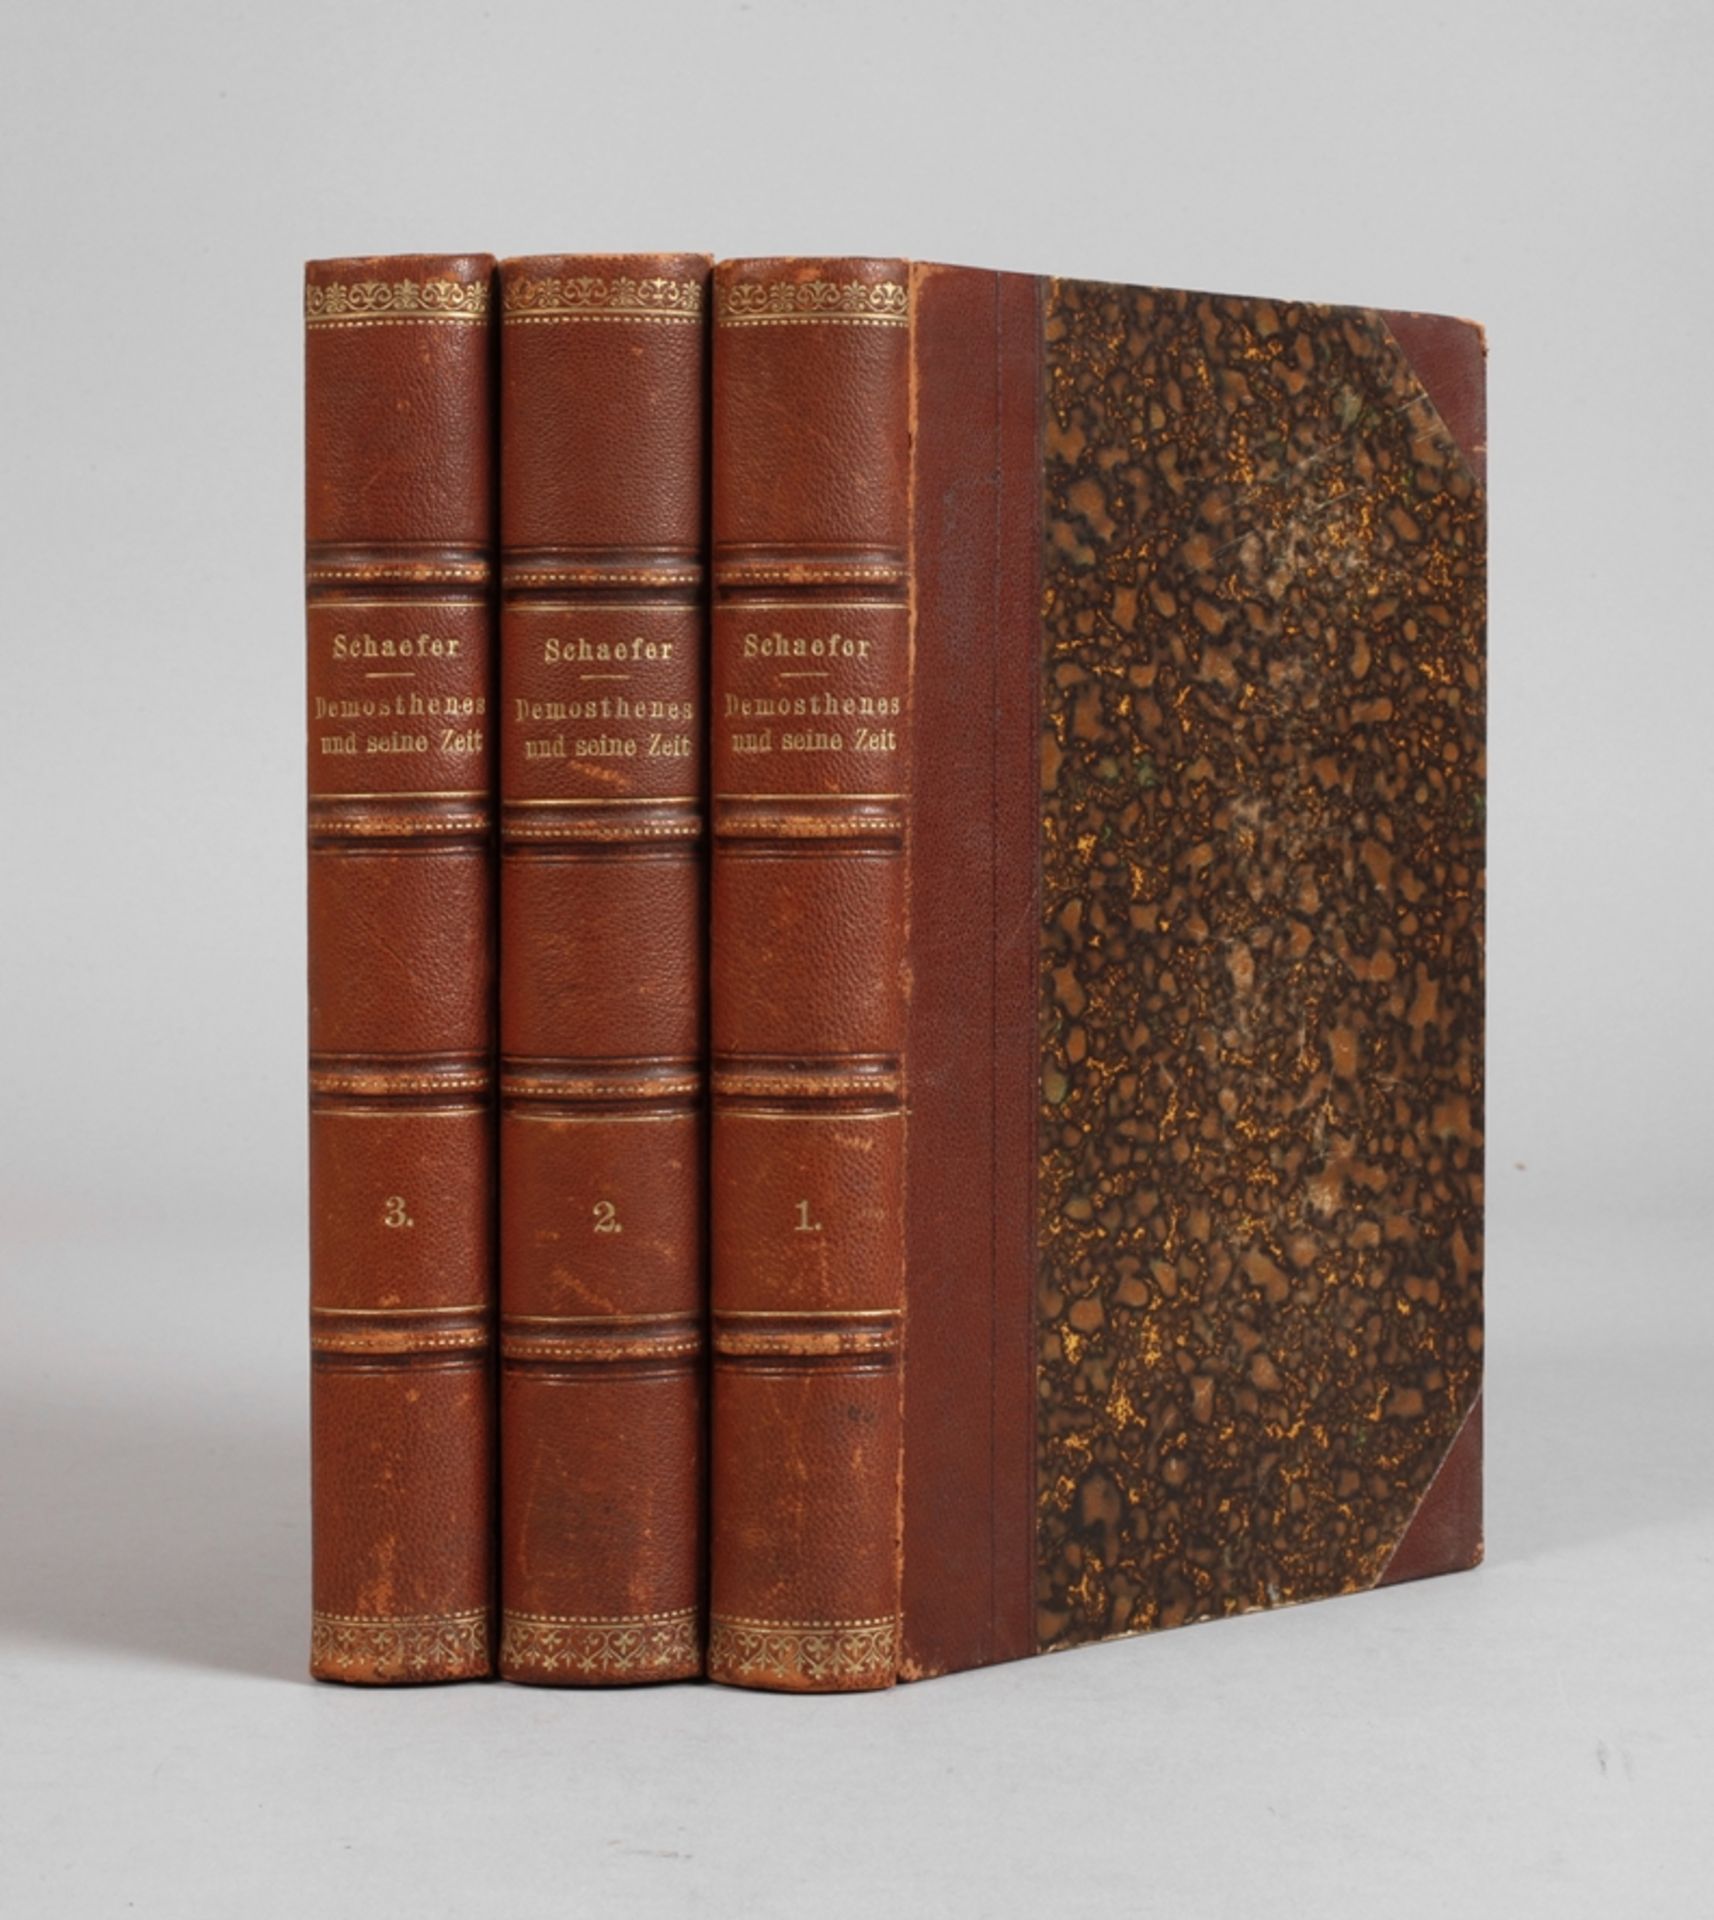 Three volumes Demosthenes und seine Zeit